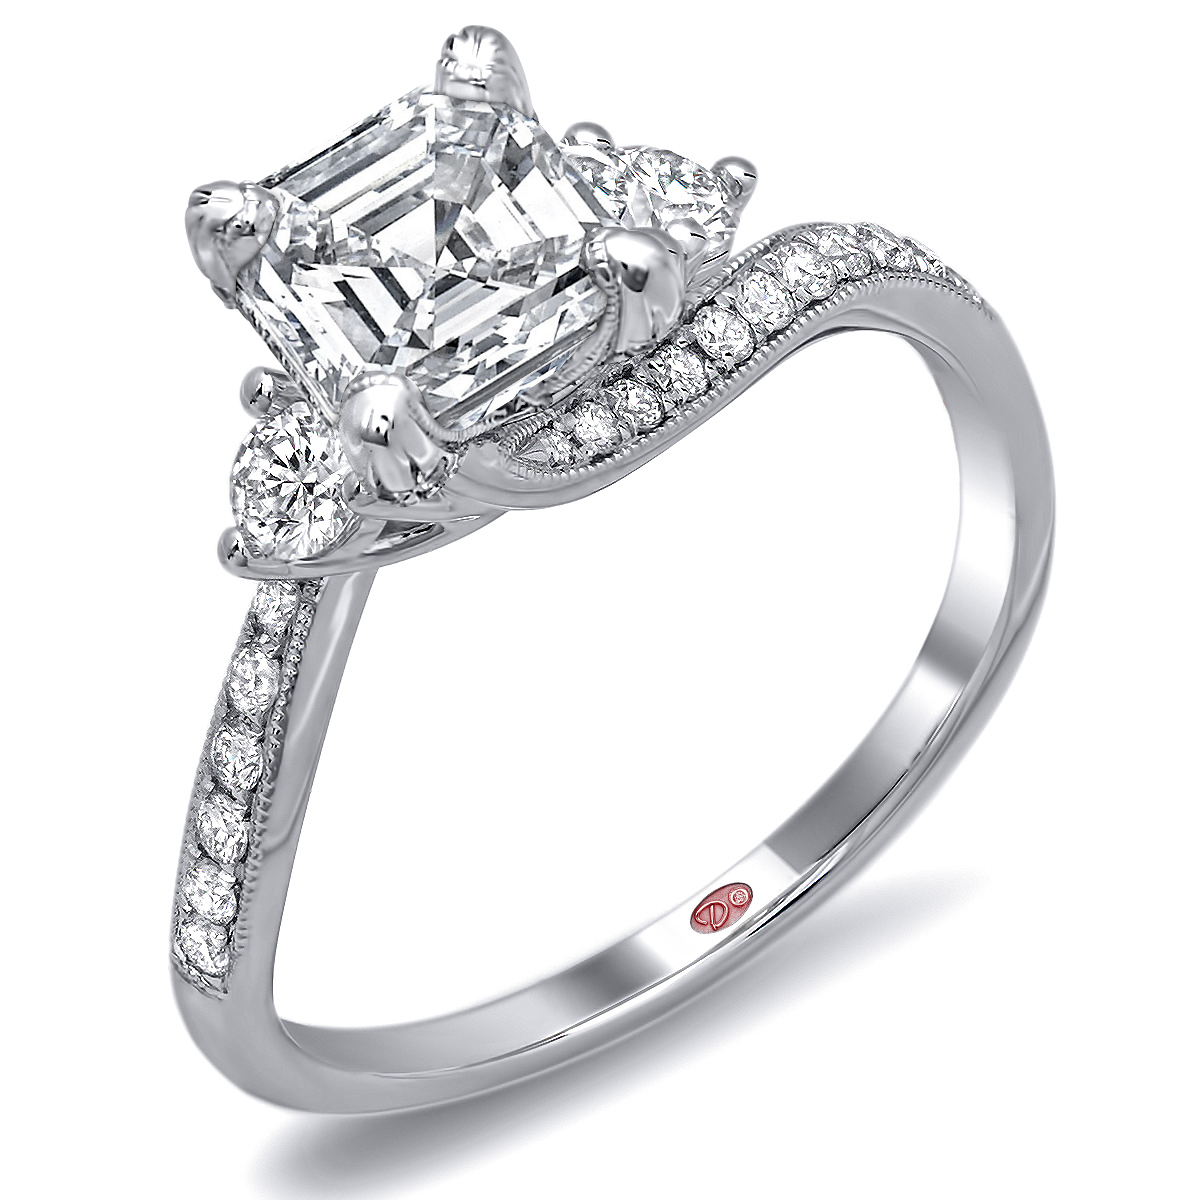 Asscher Cut Engagement Ring | Demarco Bridal Jewelry Official Blog